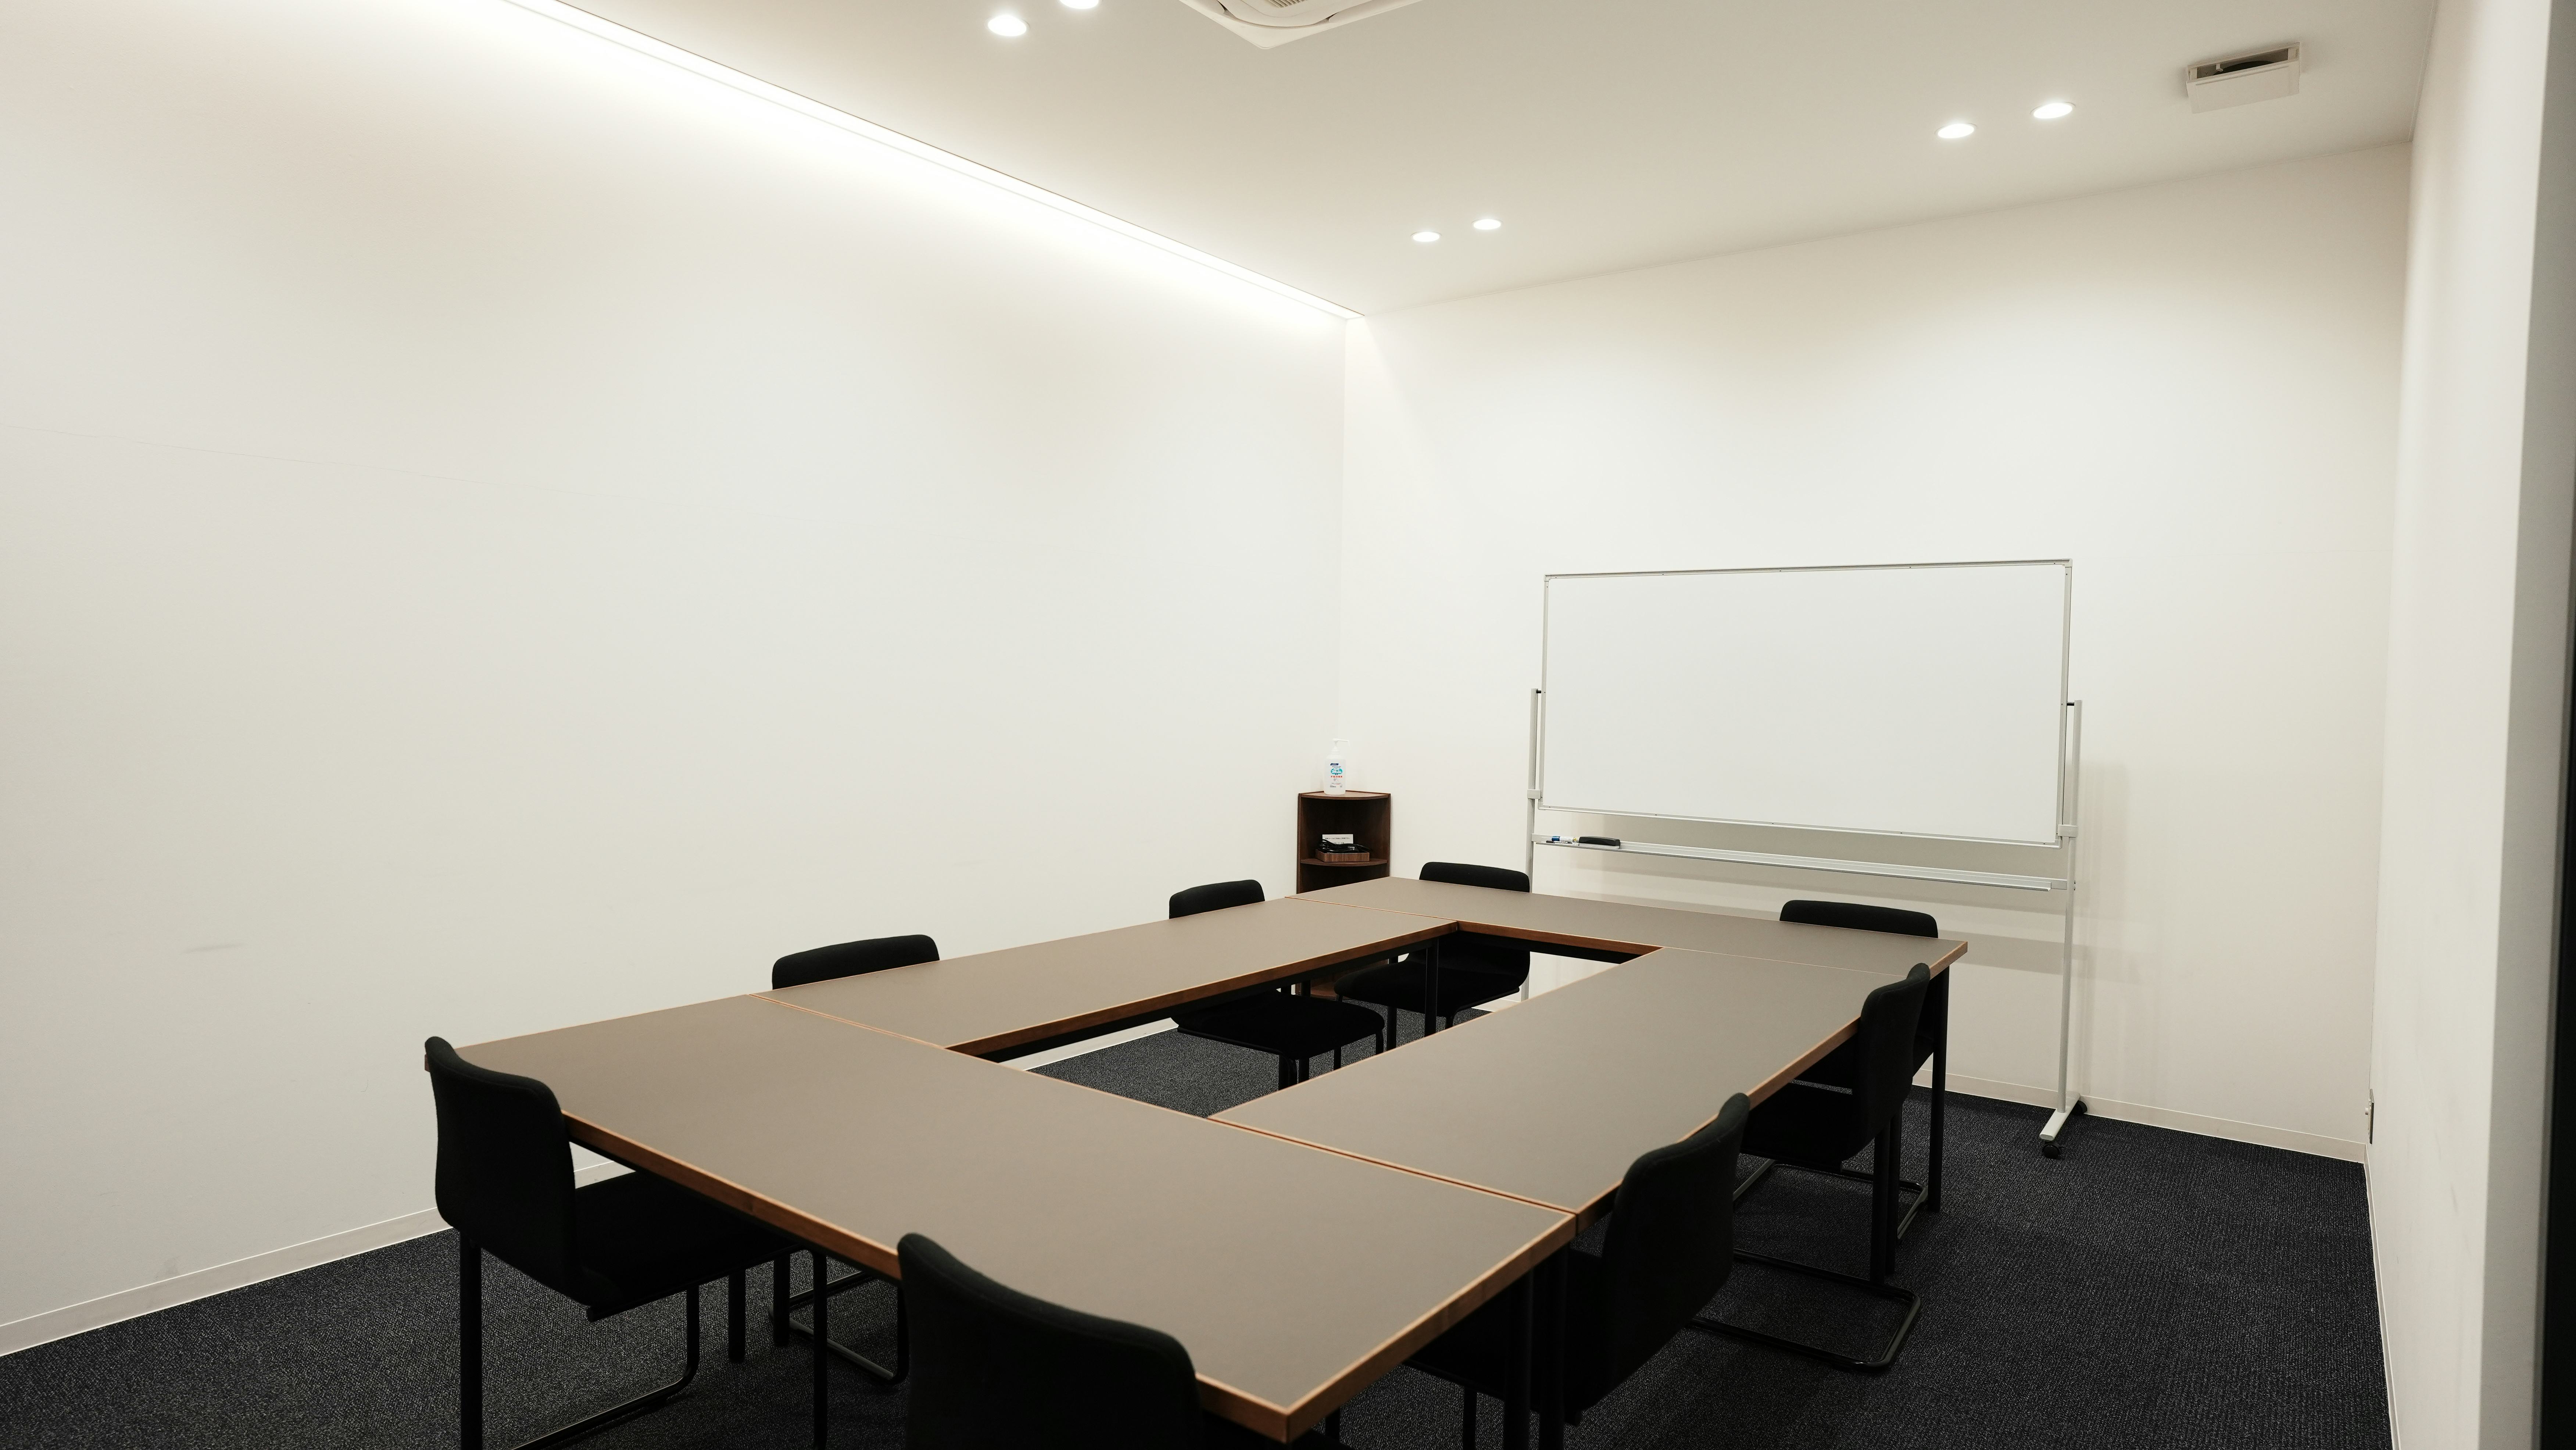 【TOGITOGI(トギトギ)】10人規模のセミナーやワークショップに最適なコワーキング施設内の貸し会議室(会議室大)